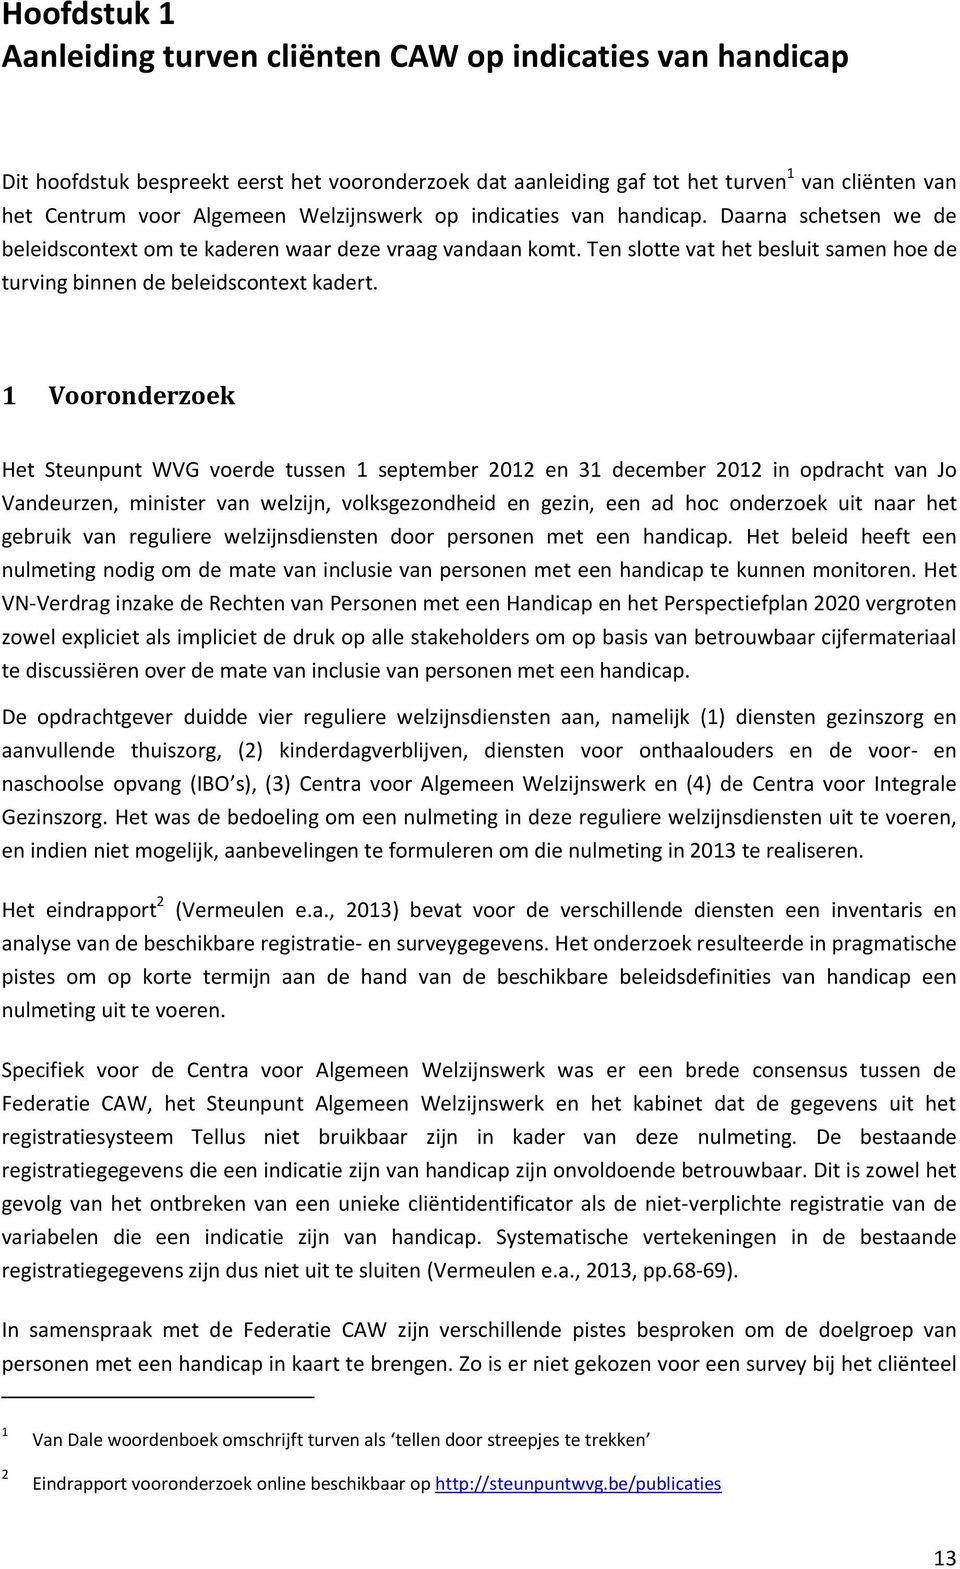 1 Vooronderzoek Het Steunpunt WVG voerde tussen 1 september 2012 en 31 december 2012 in opdracht van Jo Vandeurzen, minister van welzijn, volksgezondheid en gezin, een ad hoc onderzoek uit naar het